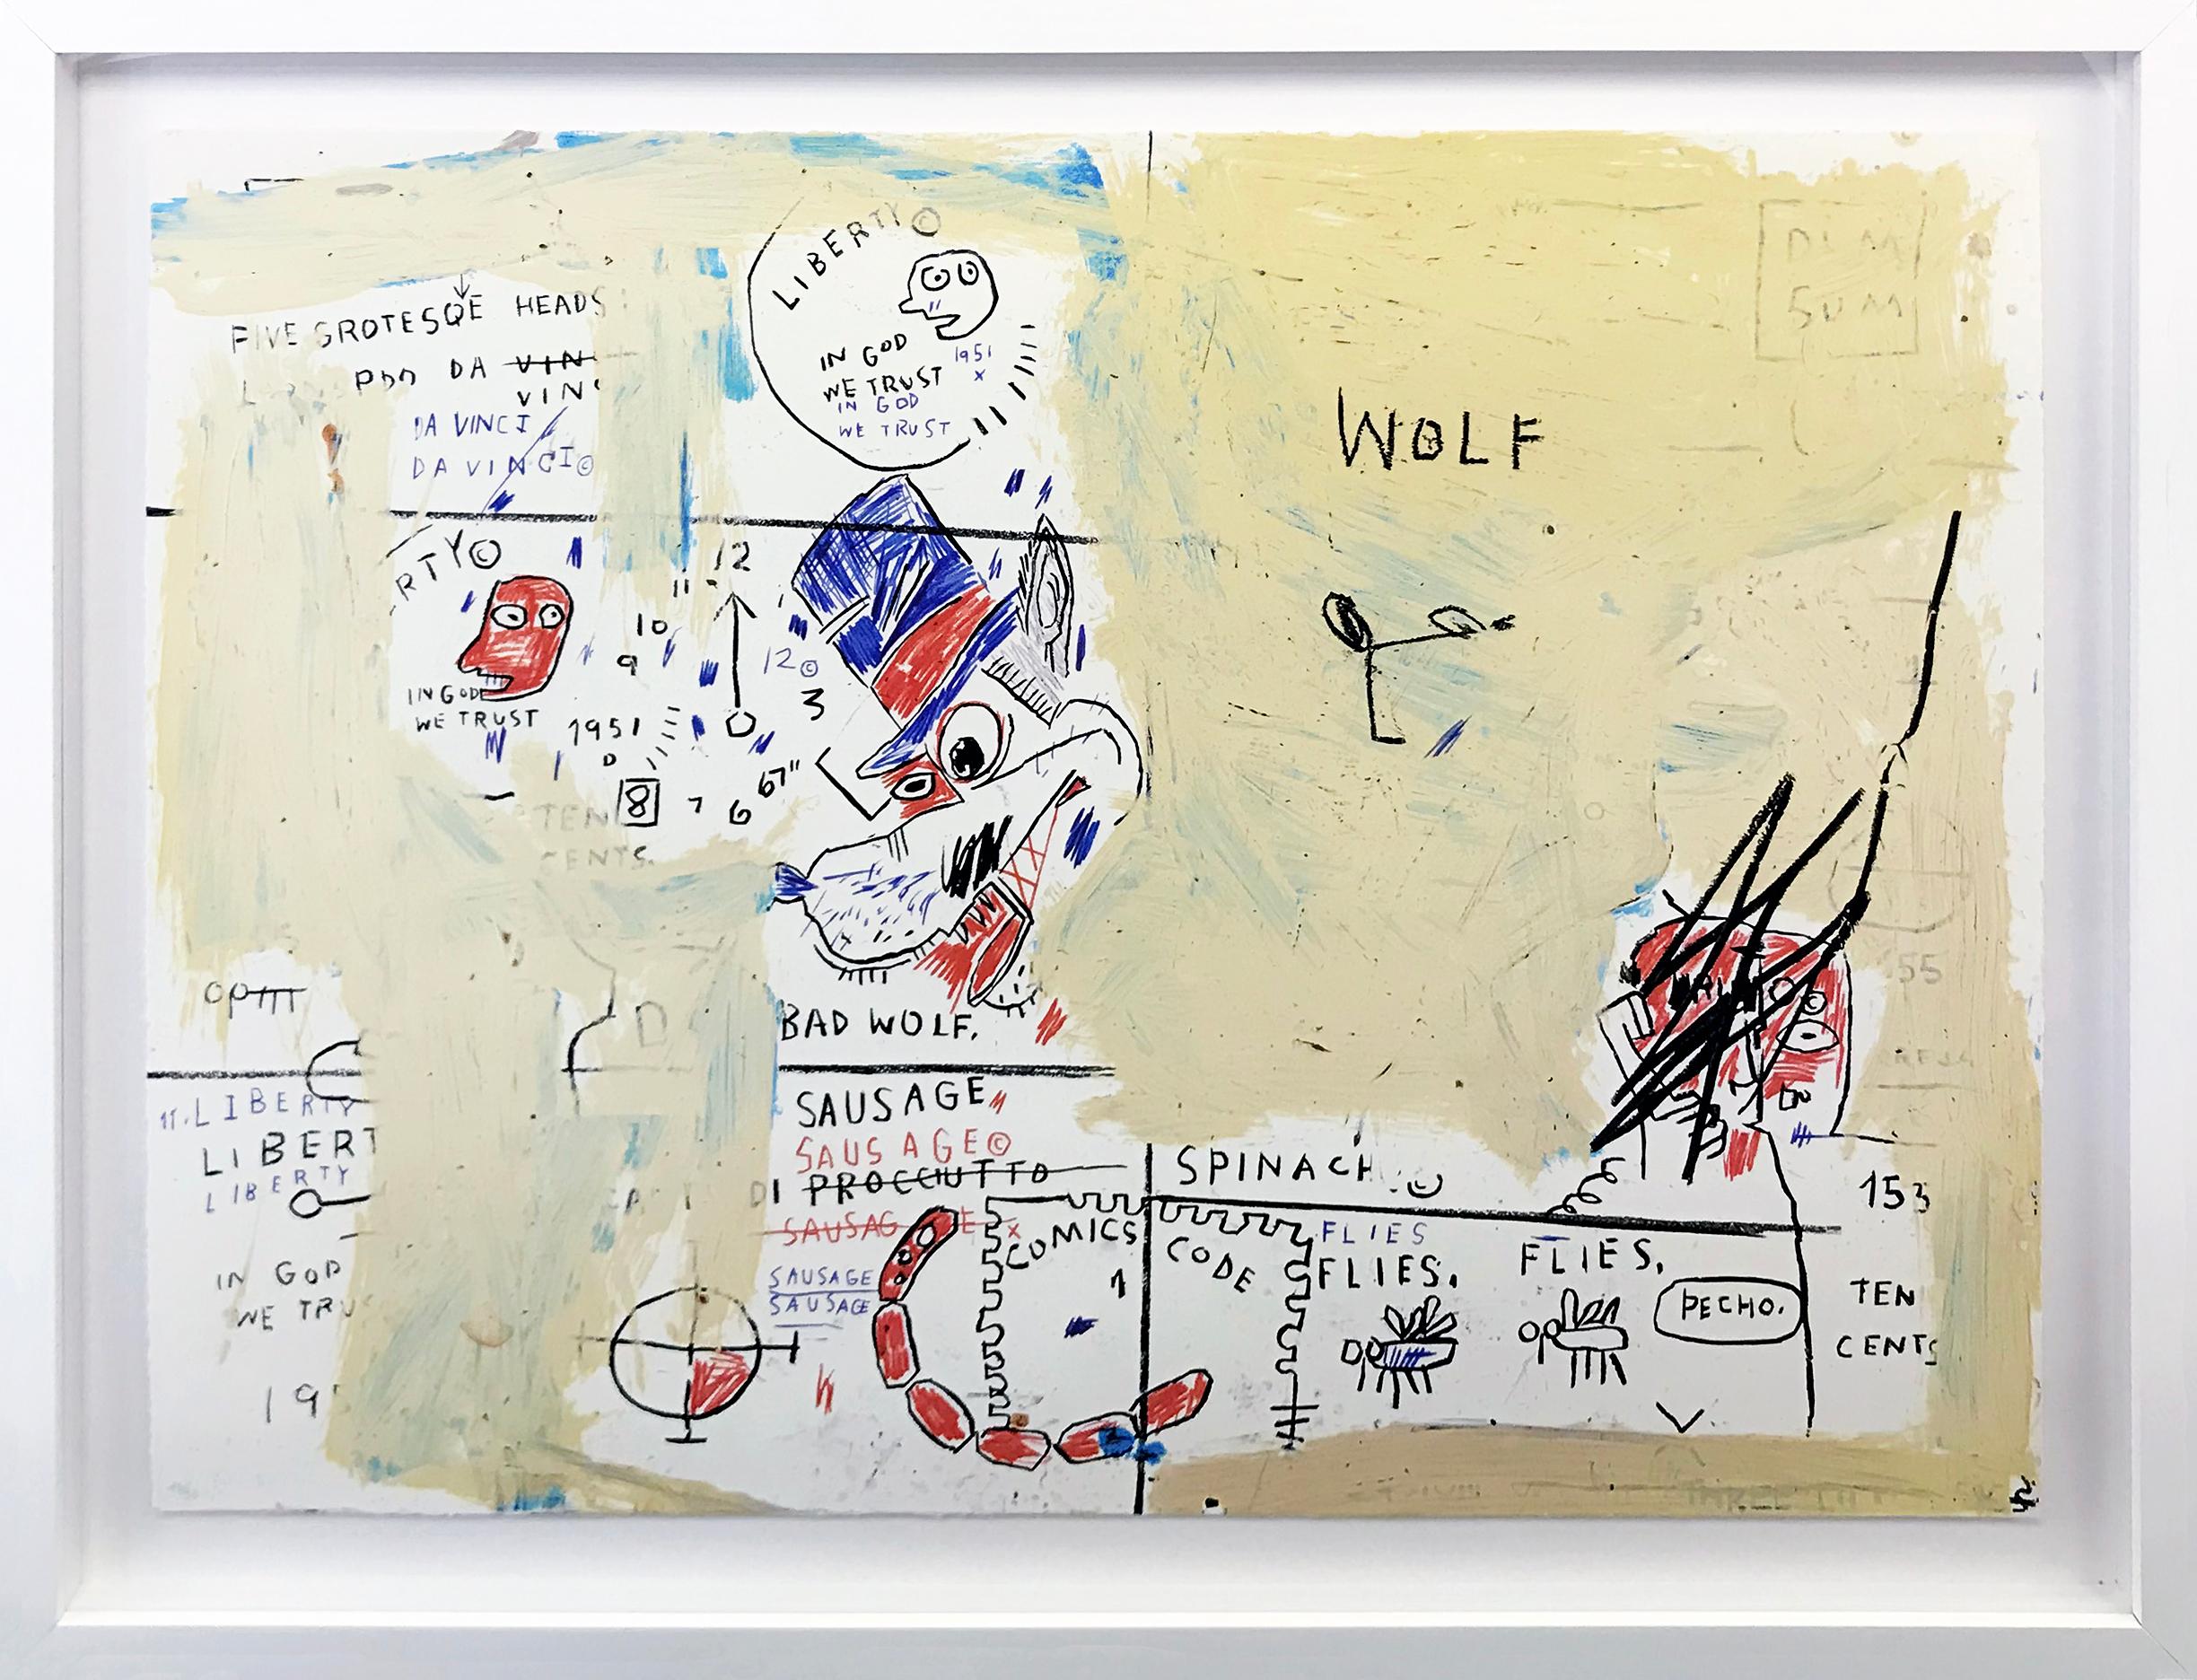 PORTFOLIO DE LA SAUCISSE DU LOUP, DE LA MARQUE DU ROI, DE L'ÉTUDE DE LA PATTE DE CHIEN ET DES GÉNIES NON DÉCOUVERTS - Print de Jean-Michel Basquiat